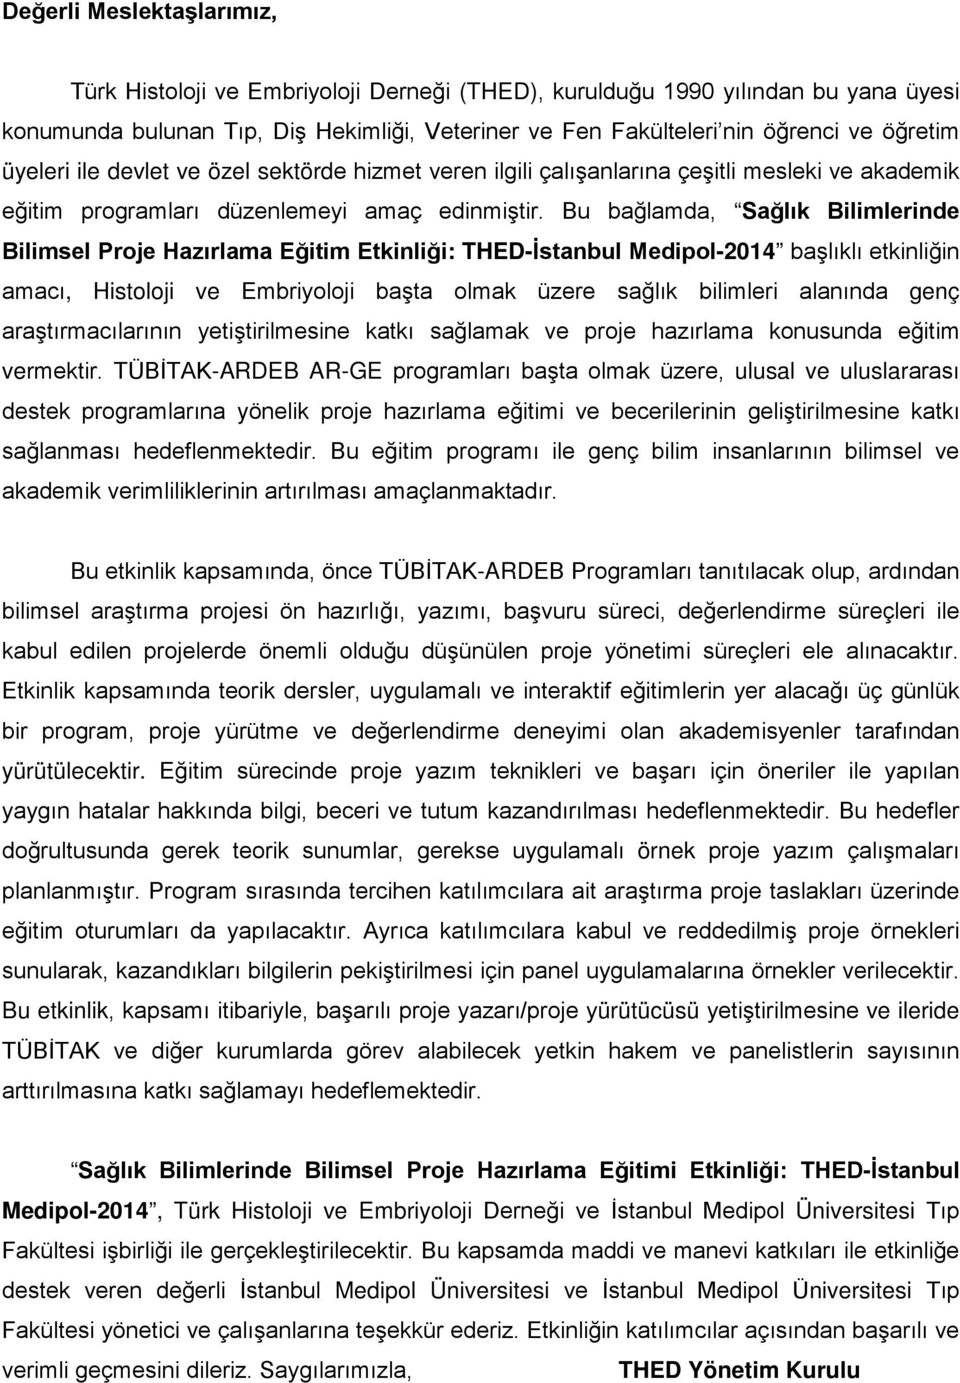 Bu bağlamda, Sağlık Bilimlerinde Bilimsel Proje Hazırlama Eğitim Etkinliği: THED-İstanbul Medipol-2014 başlıklı etkinliğin amacı, Histoloji ve Embriyoloji başta olmak üzere sağlık bilimleri alanında